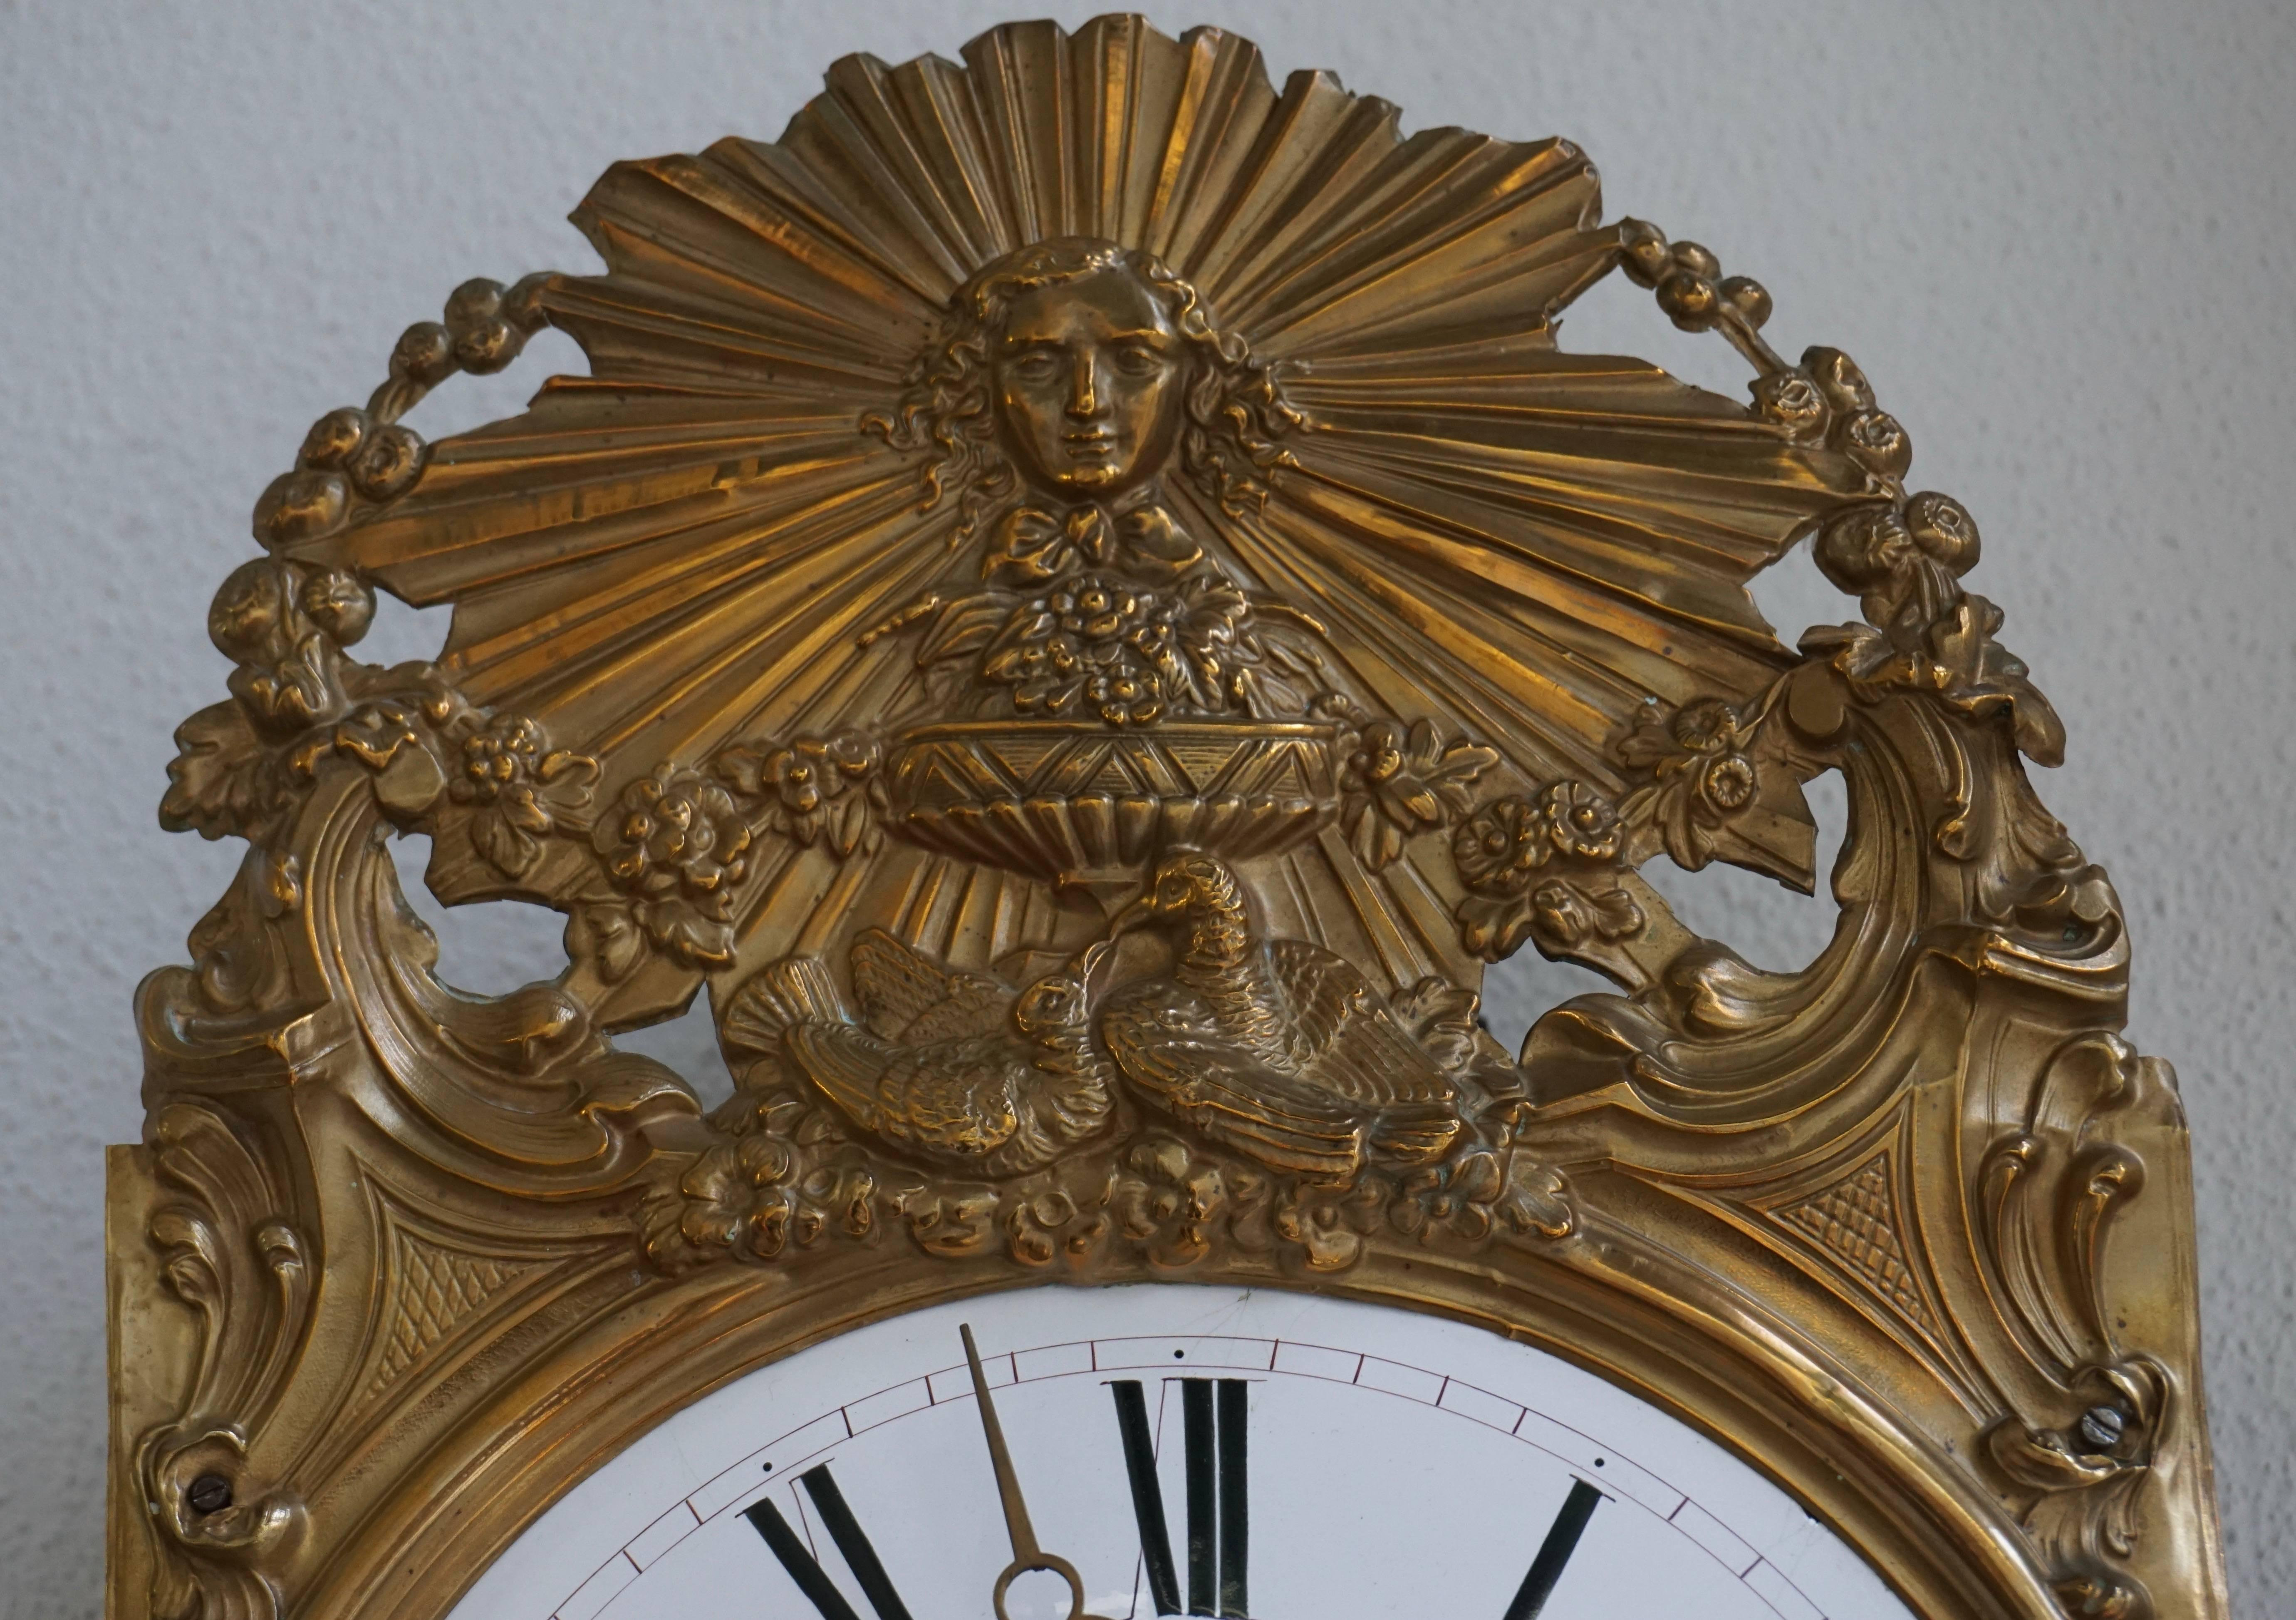 Copper Comtoise Clock Work with Lyre Pendulum